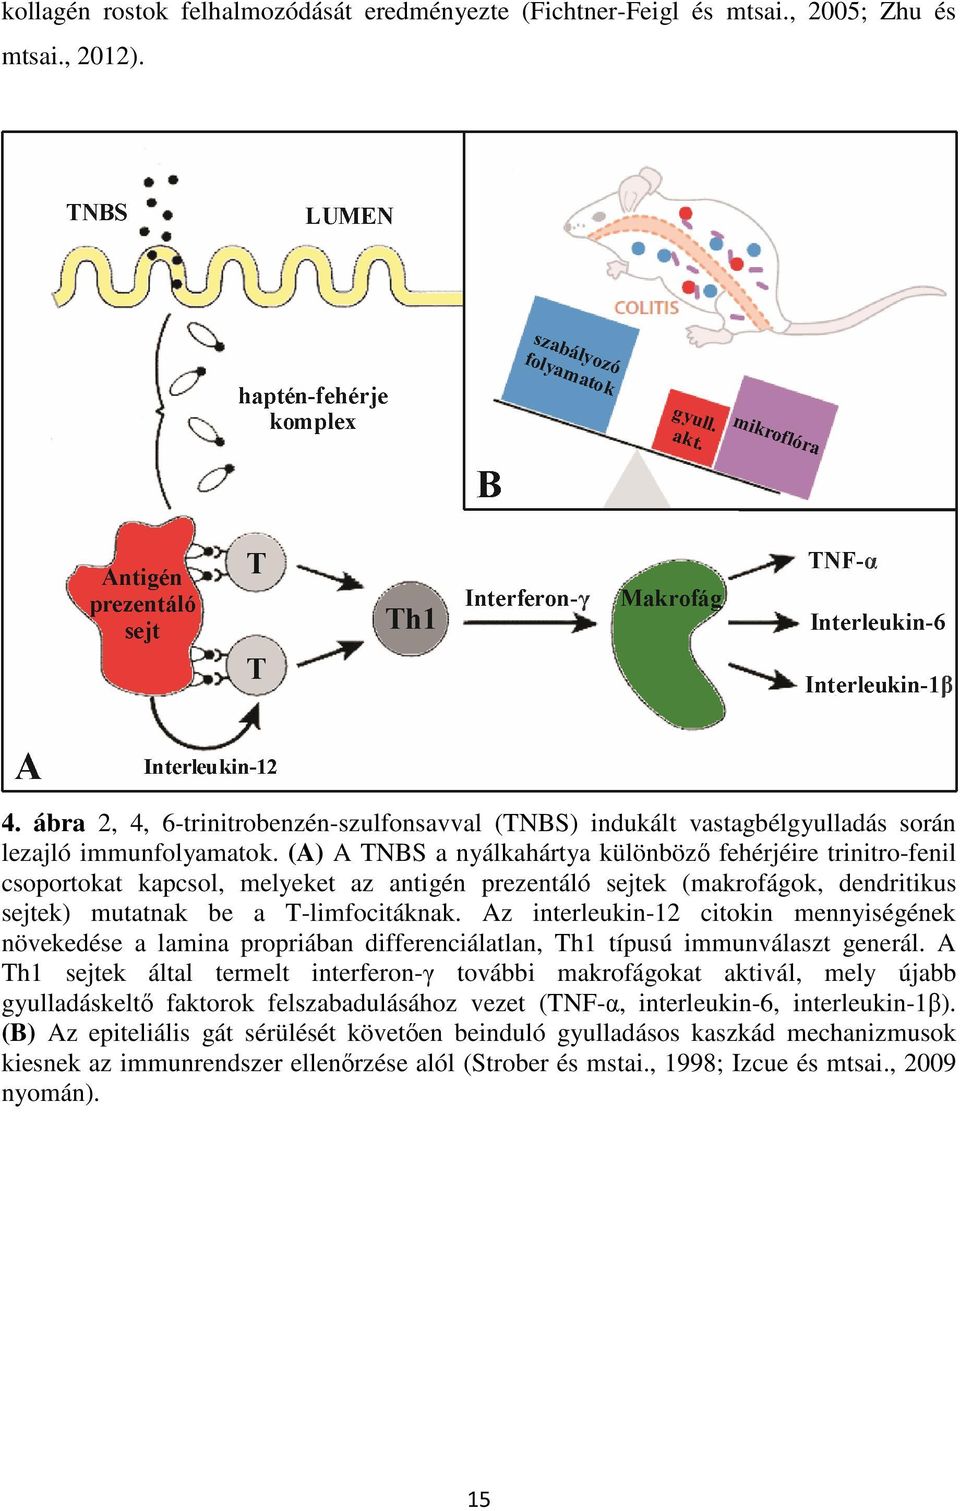 (A) A TNBS a nyálkahártya különbözı fehérjéire trinitro-fenil csoportokat kapcsol, melyeket az antigén prezentáló sejtek (makrofágok, dendritikus sejtek) mutatnak be a T-limfocitáknak.